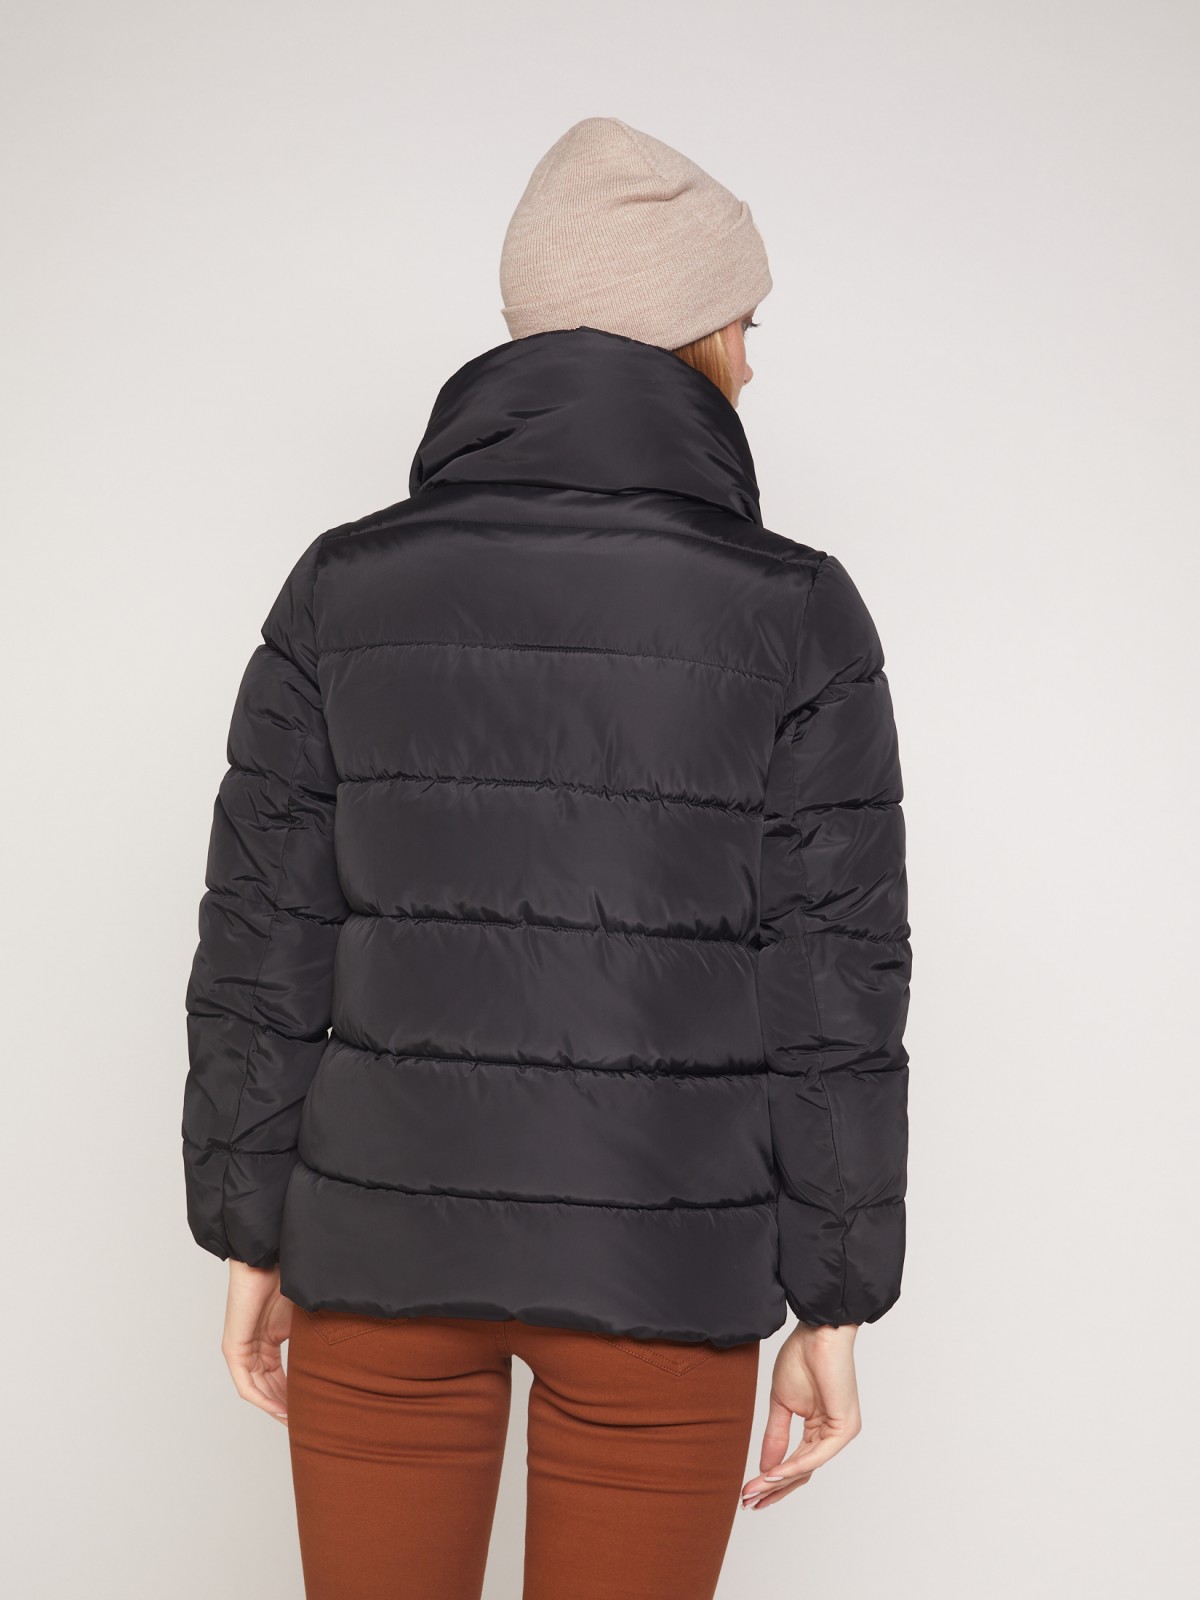 Тёплая куртка с высоким воротником-стойкой zolla 021335102054, цвет черный, размер XS - фото 6